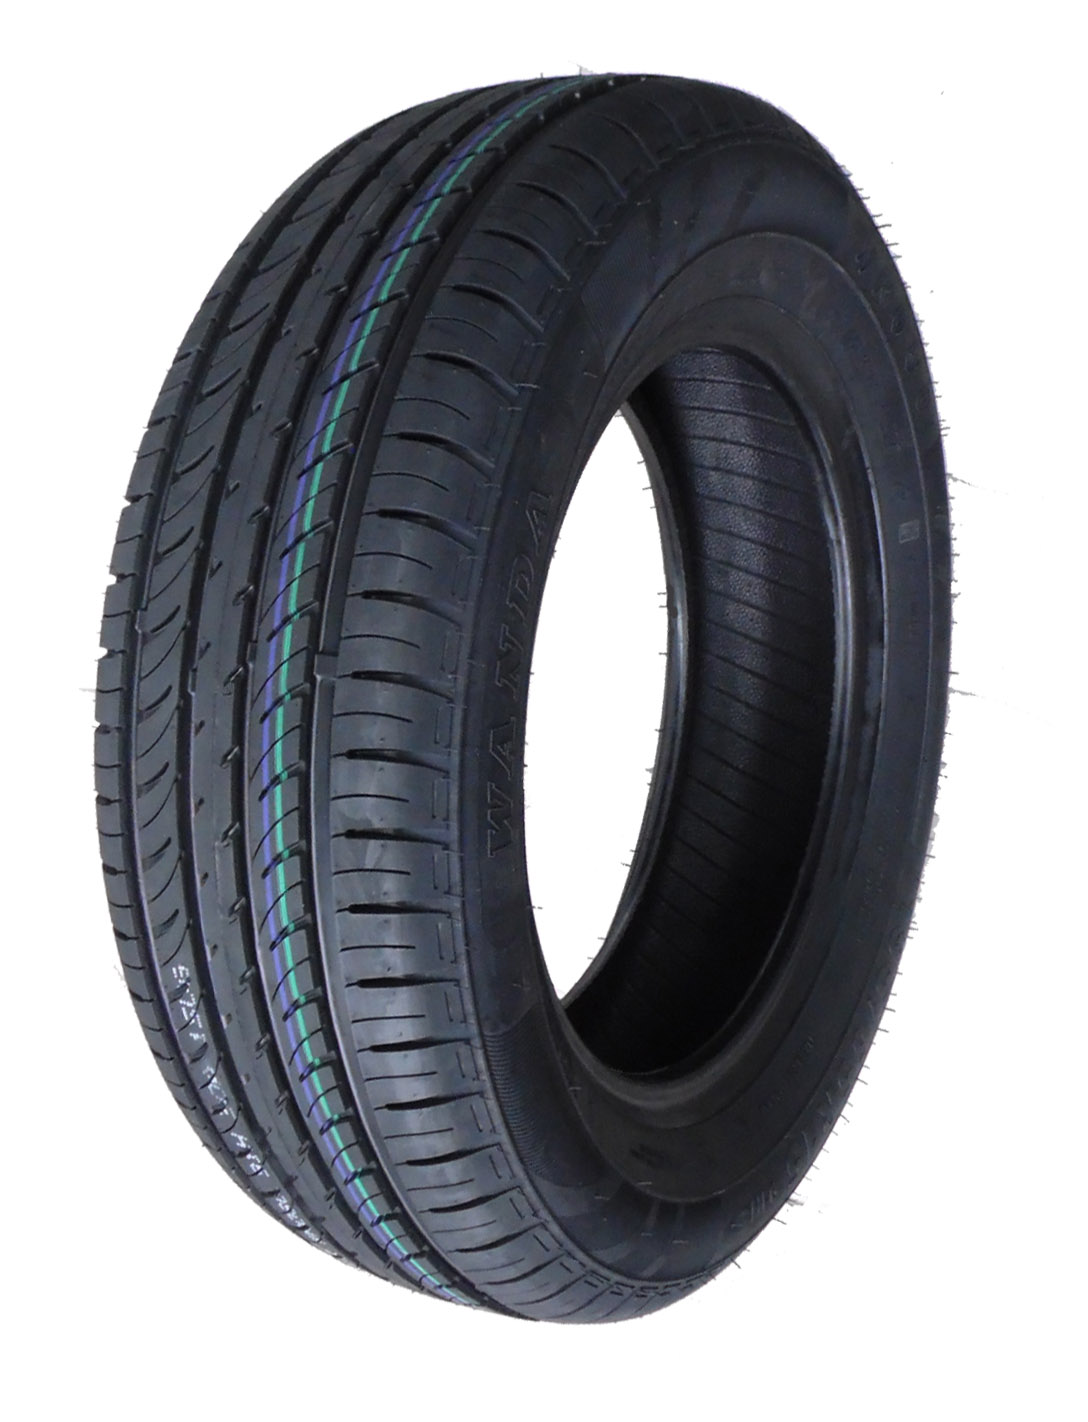 físicamente pueblo Bocadillo Buer KG-Shop - Trailer tyre Wanda 195/65 R15 91H Transporter Tire